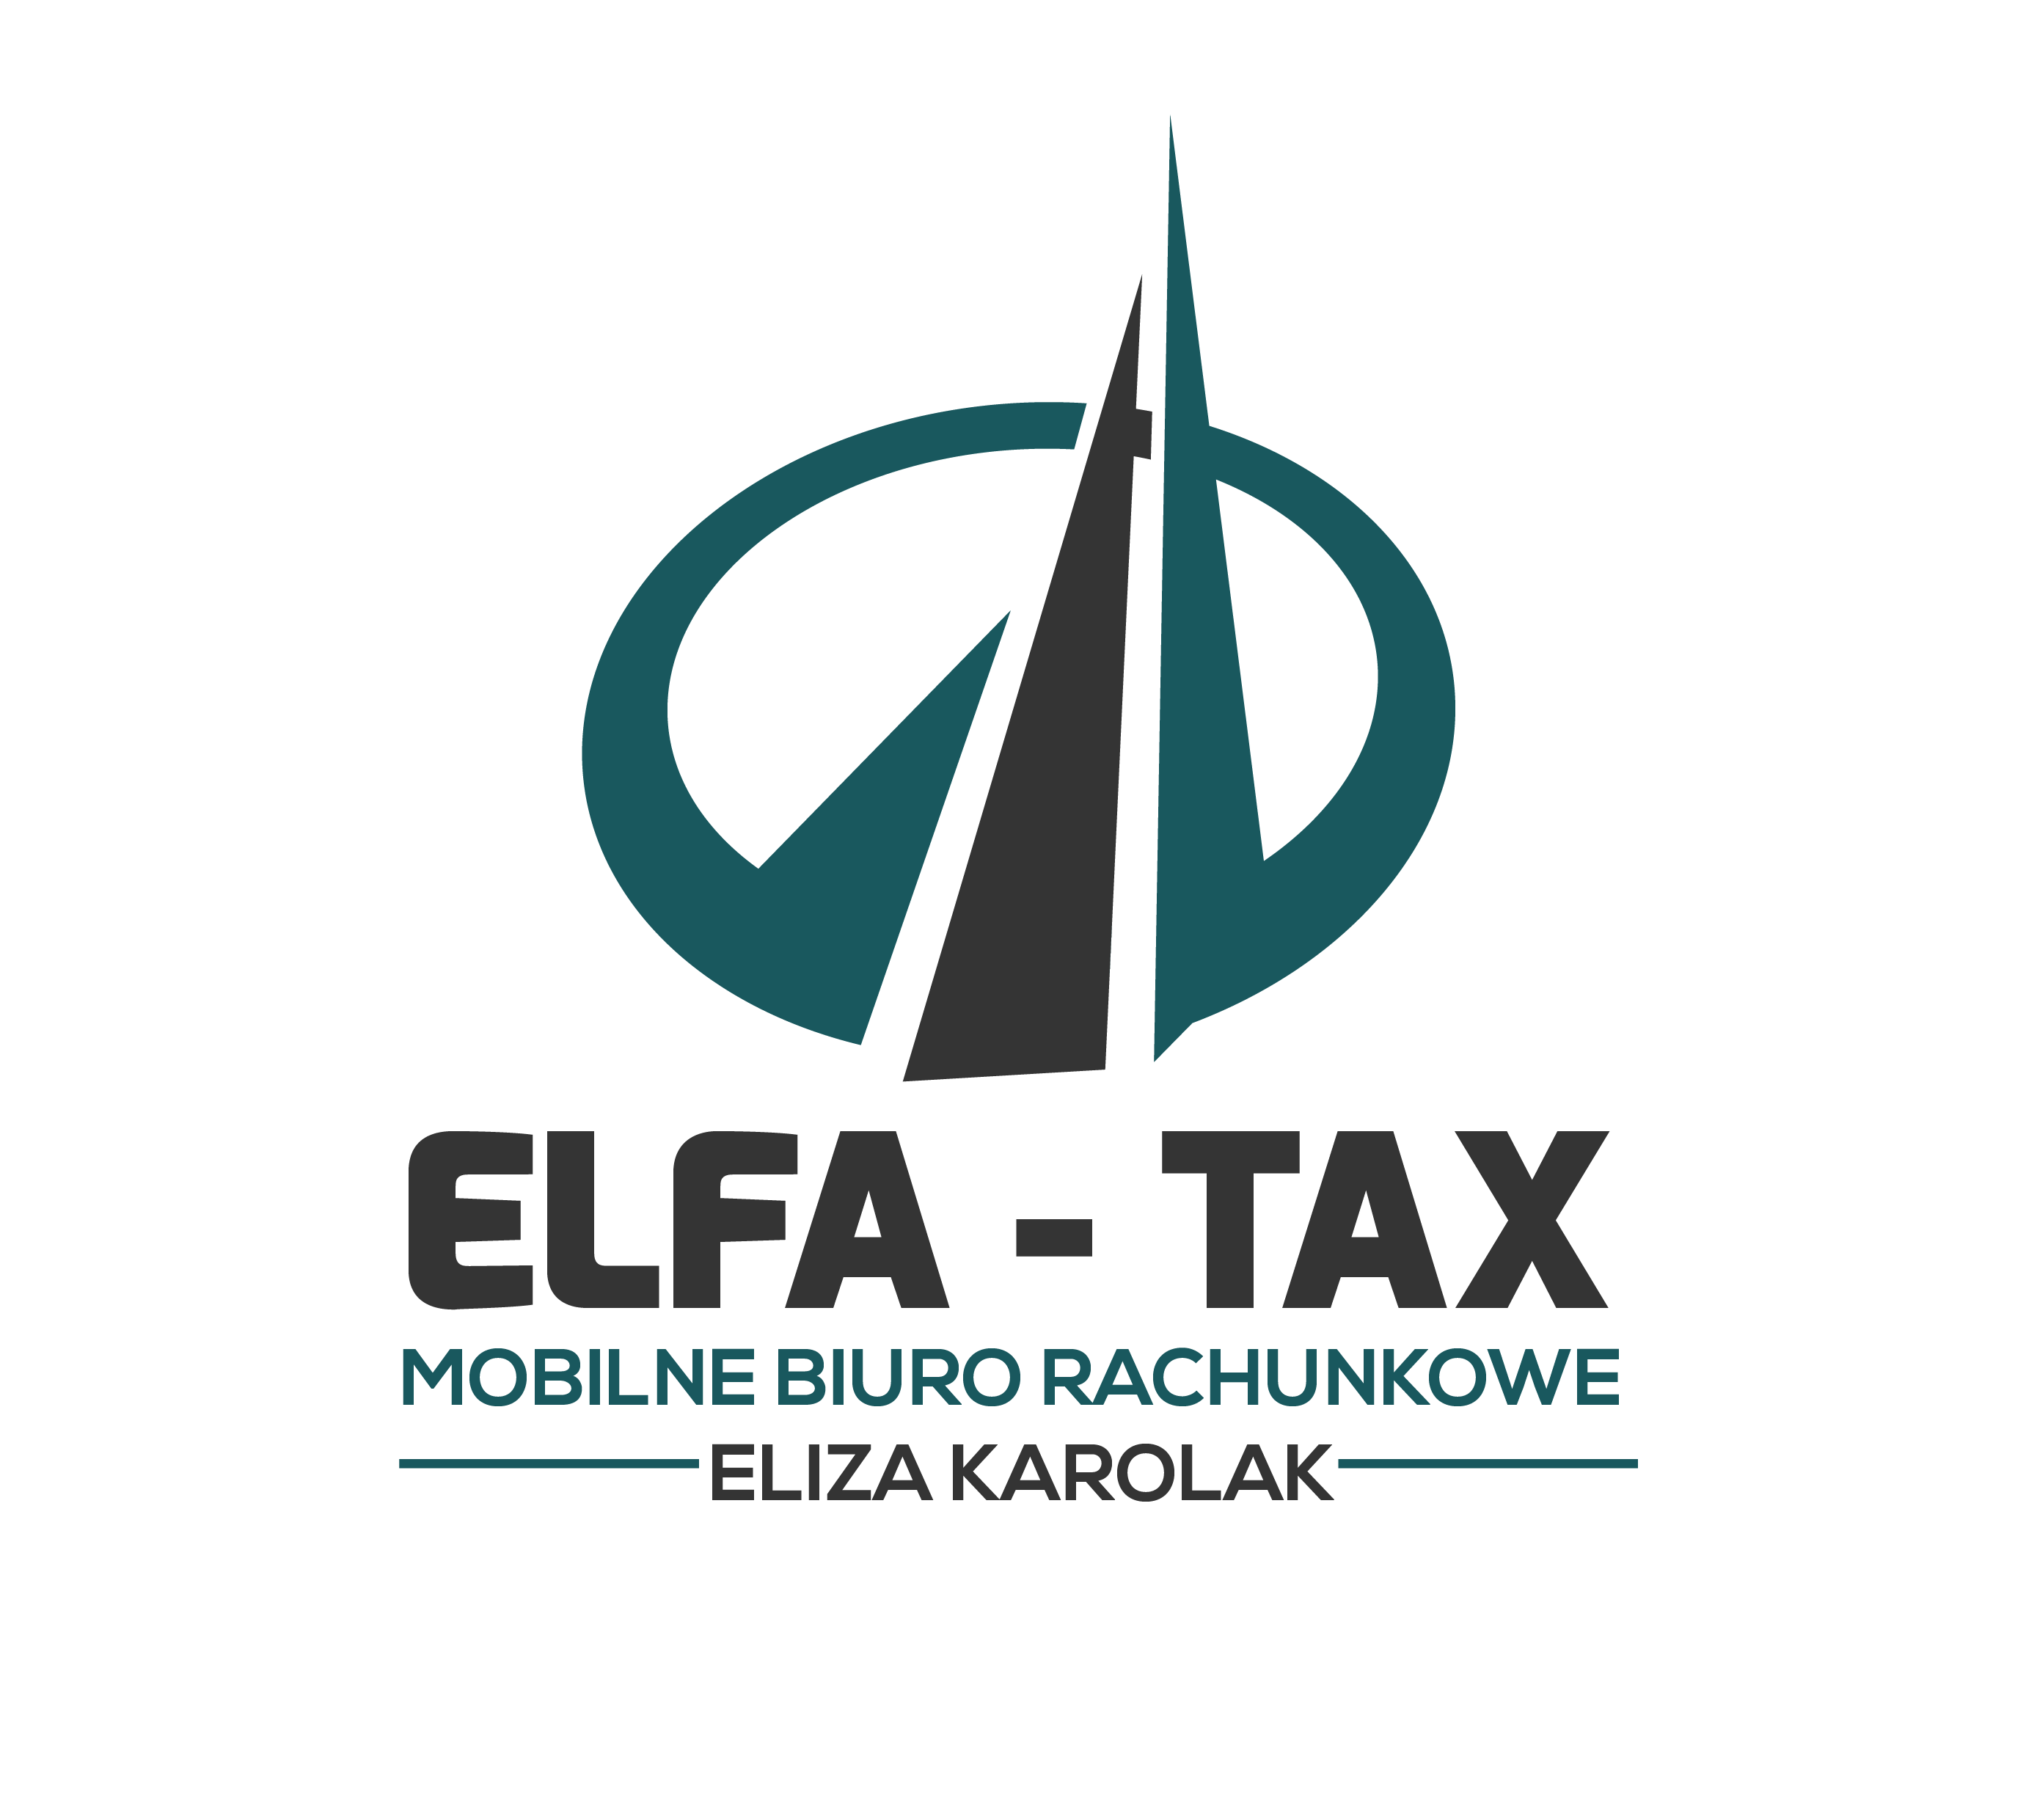 ELFA-Tax Eliza Karolak